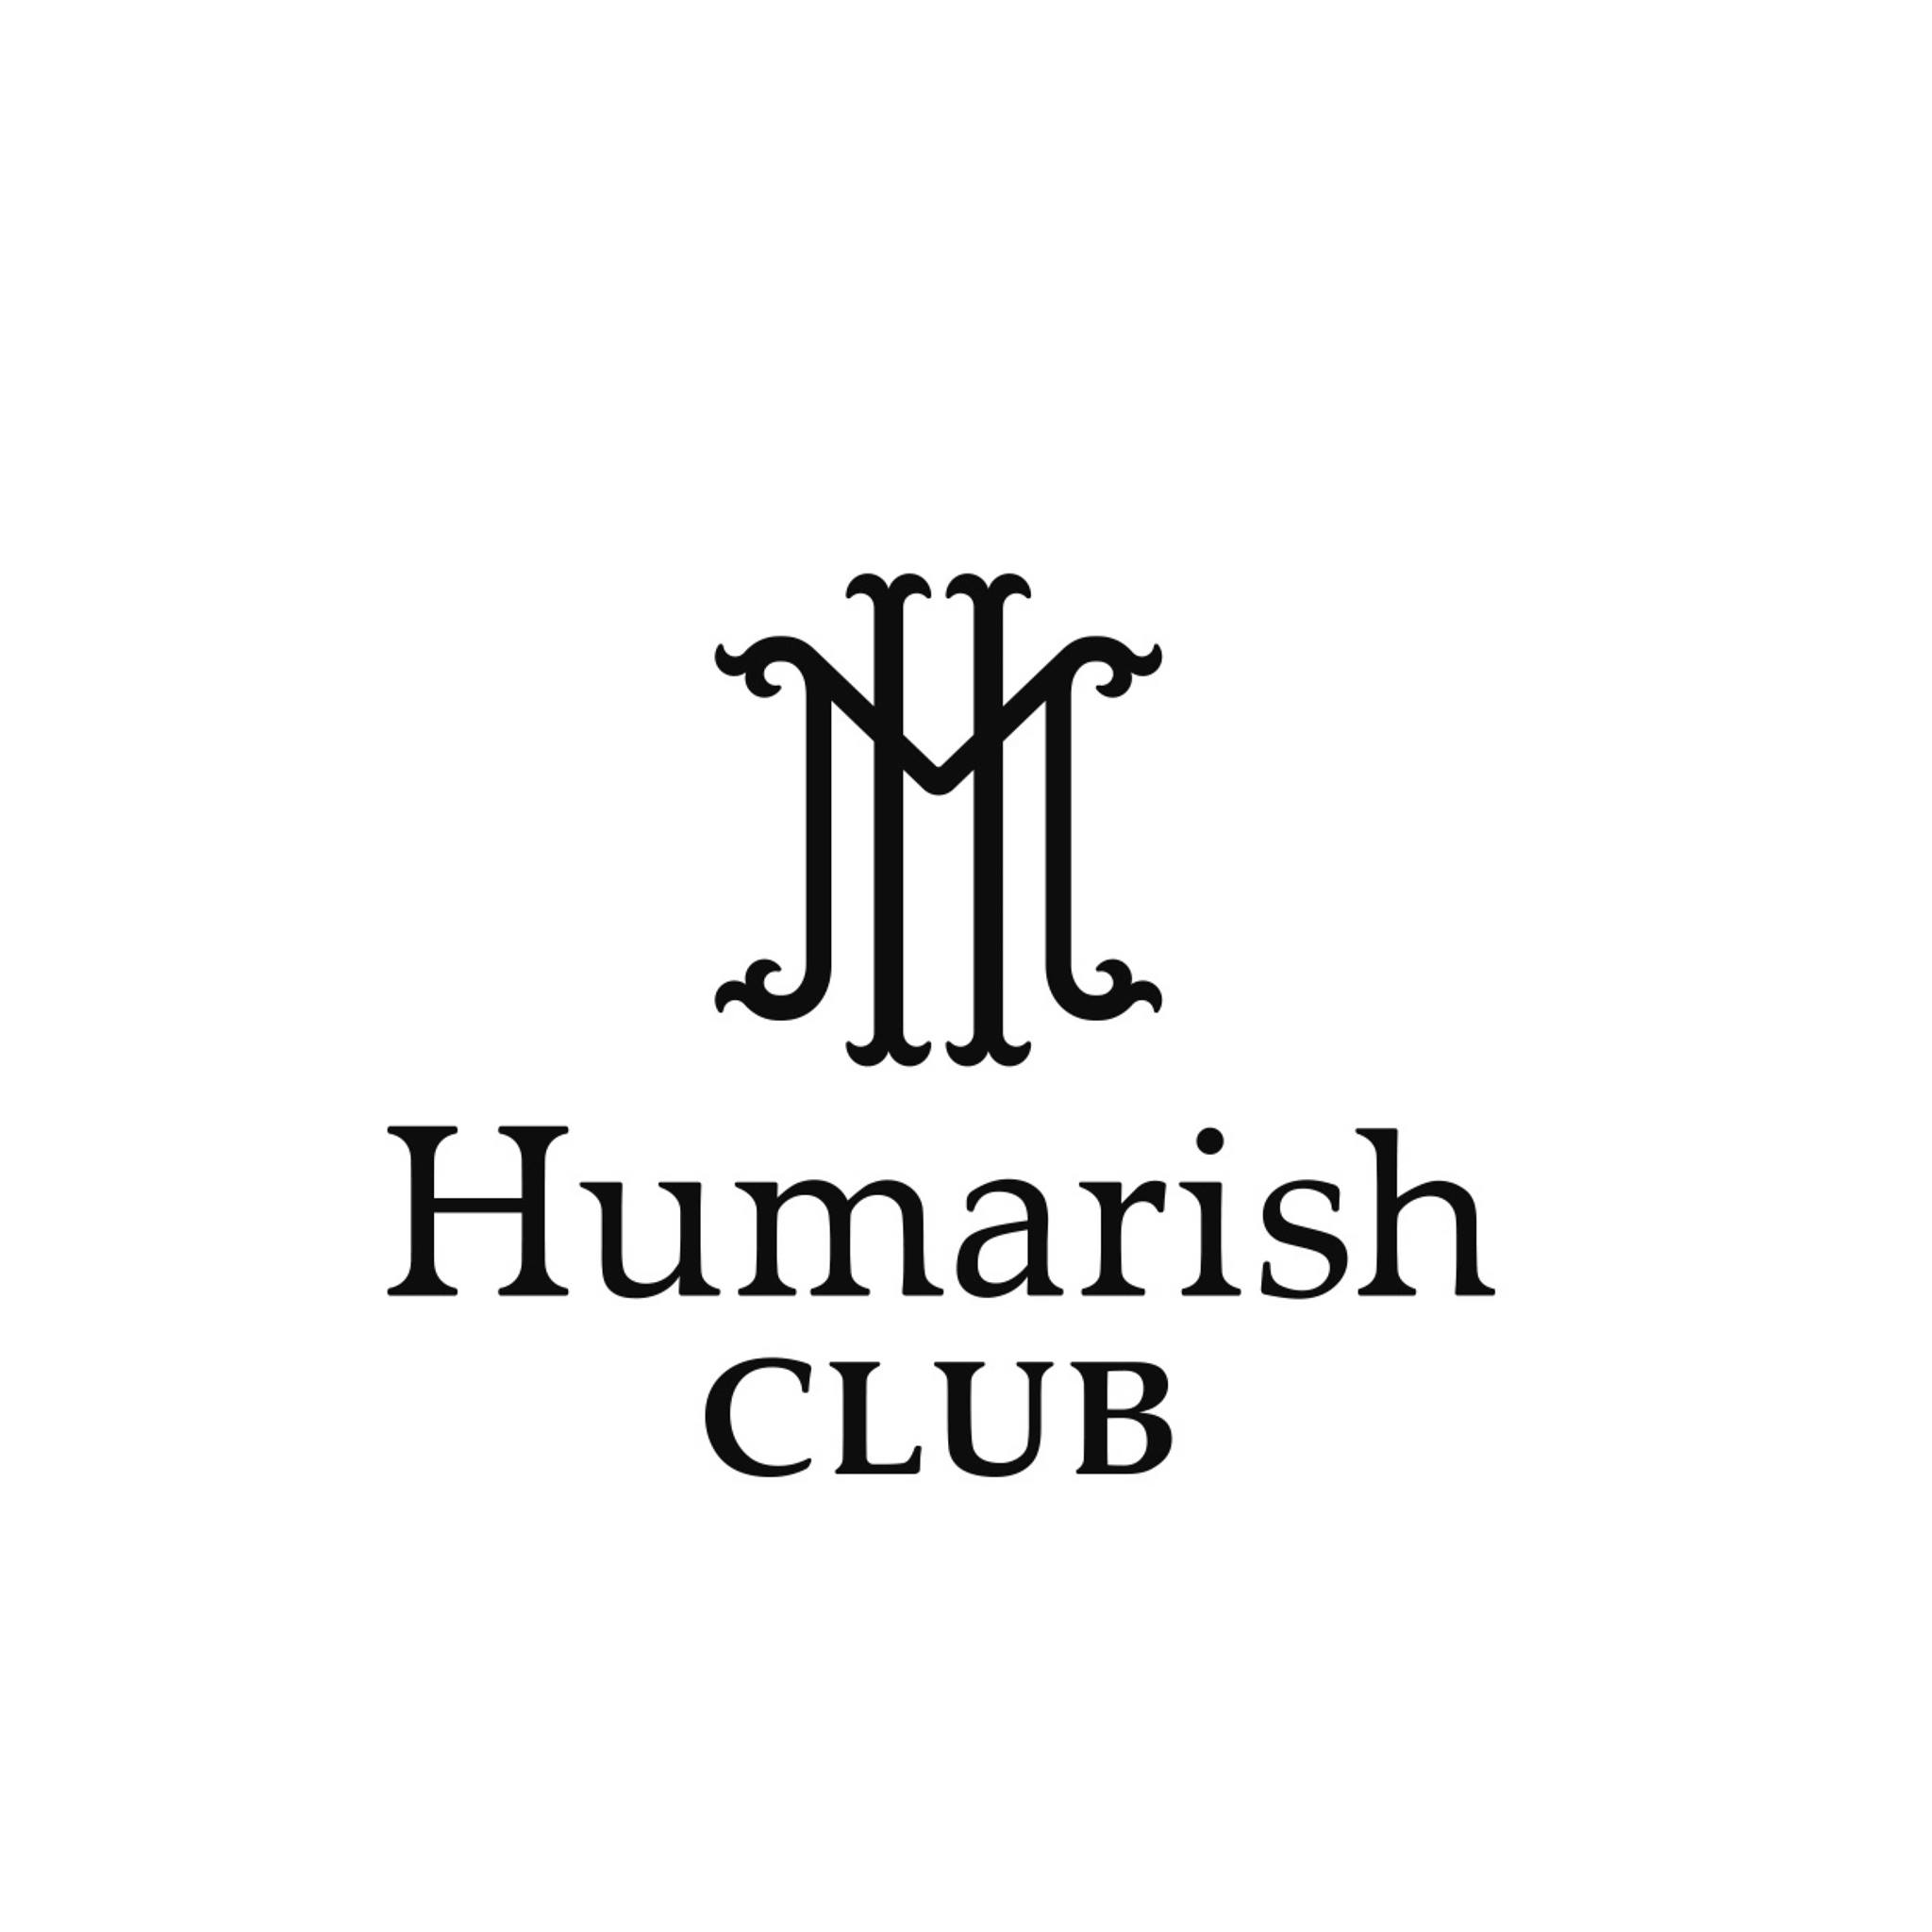 Humarish Club